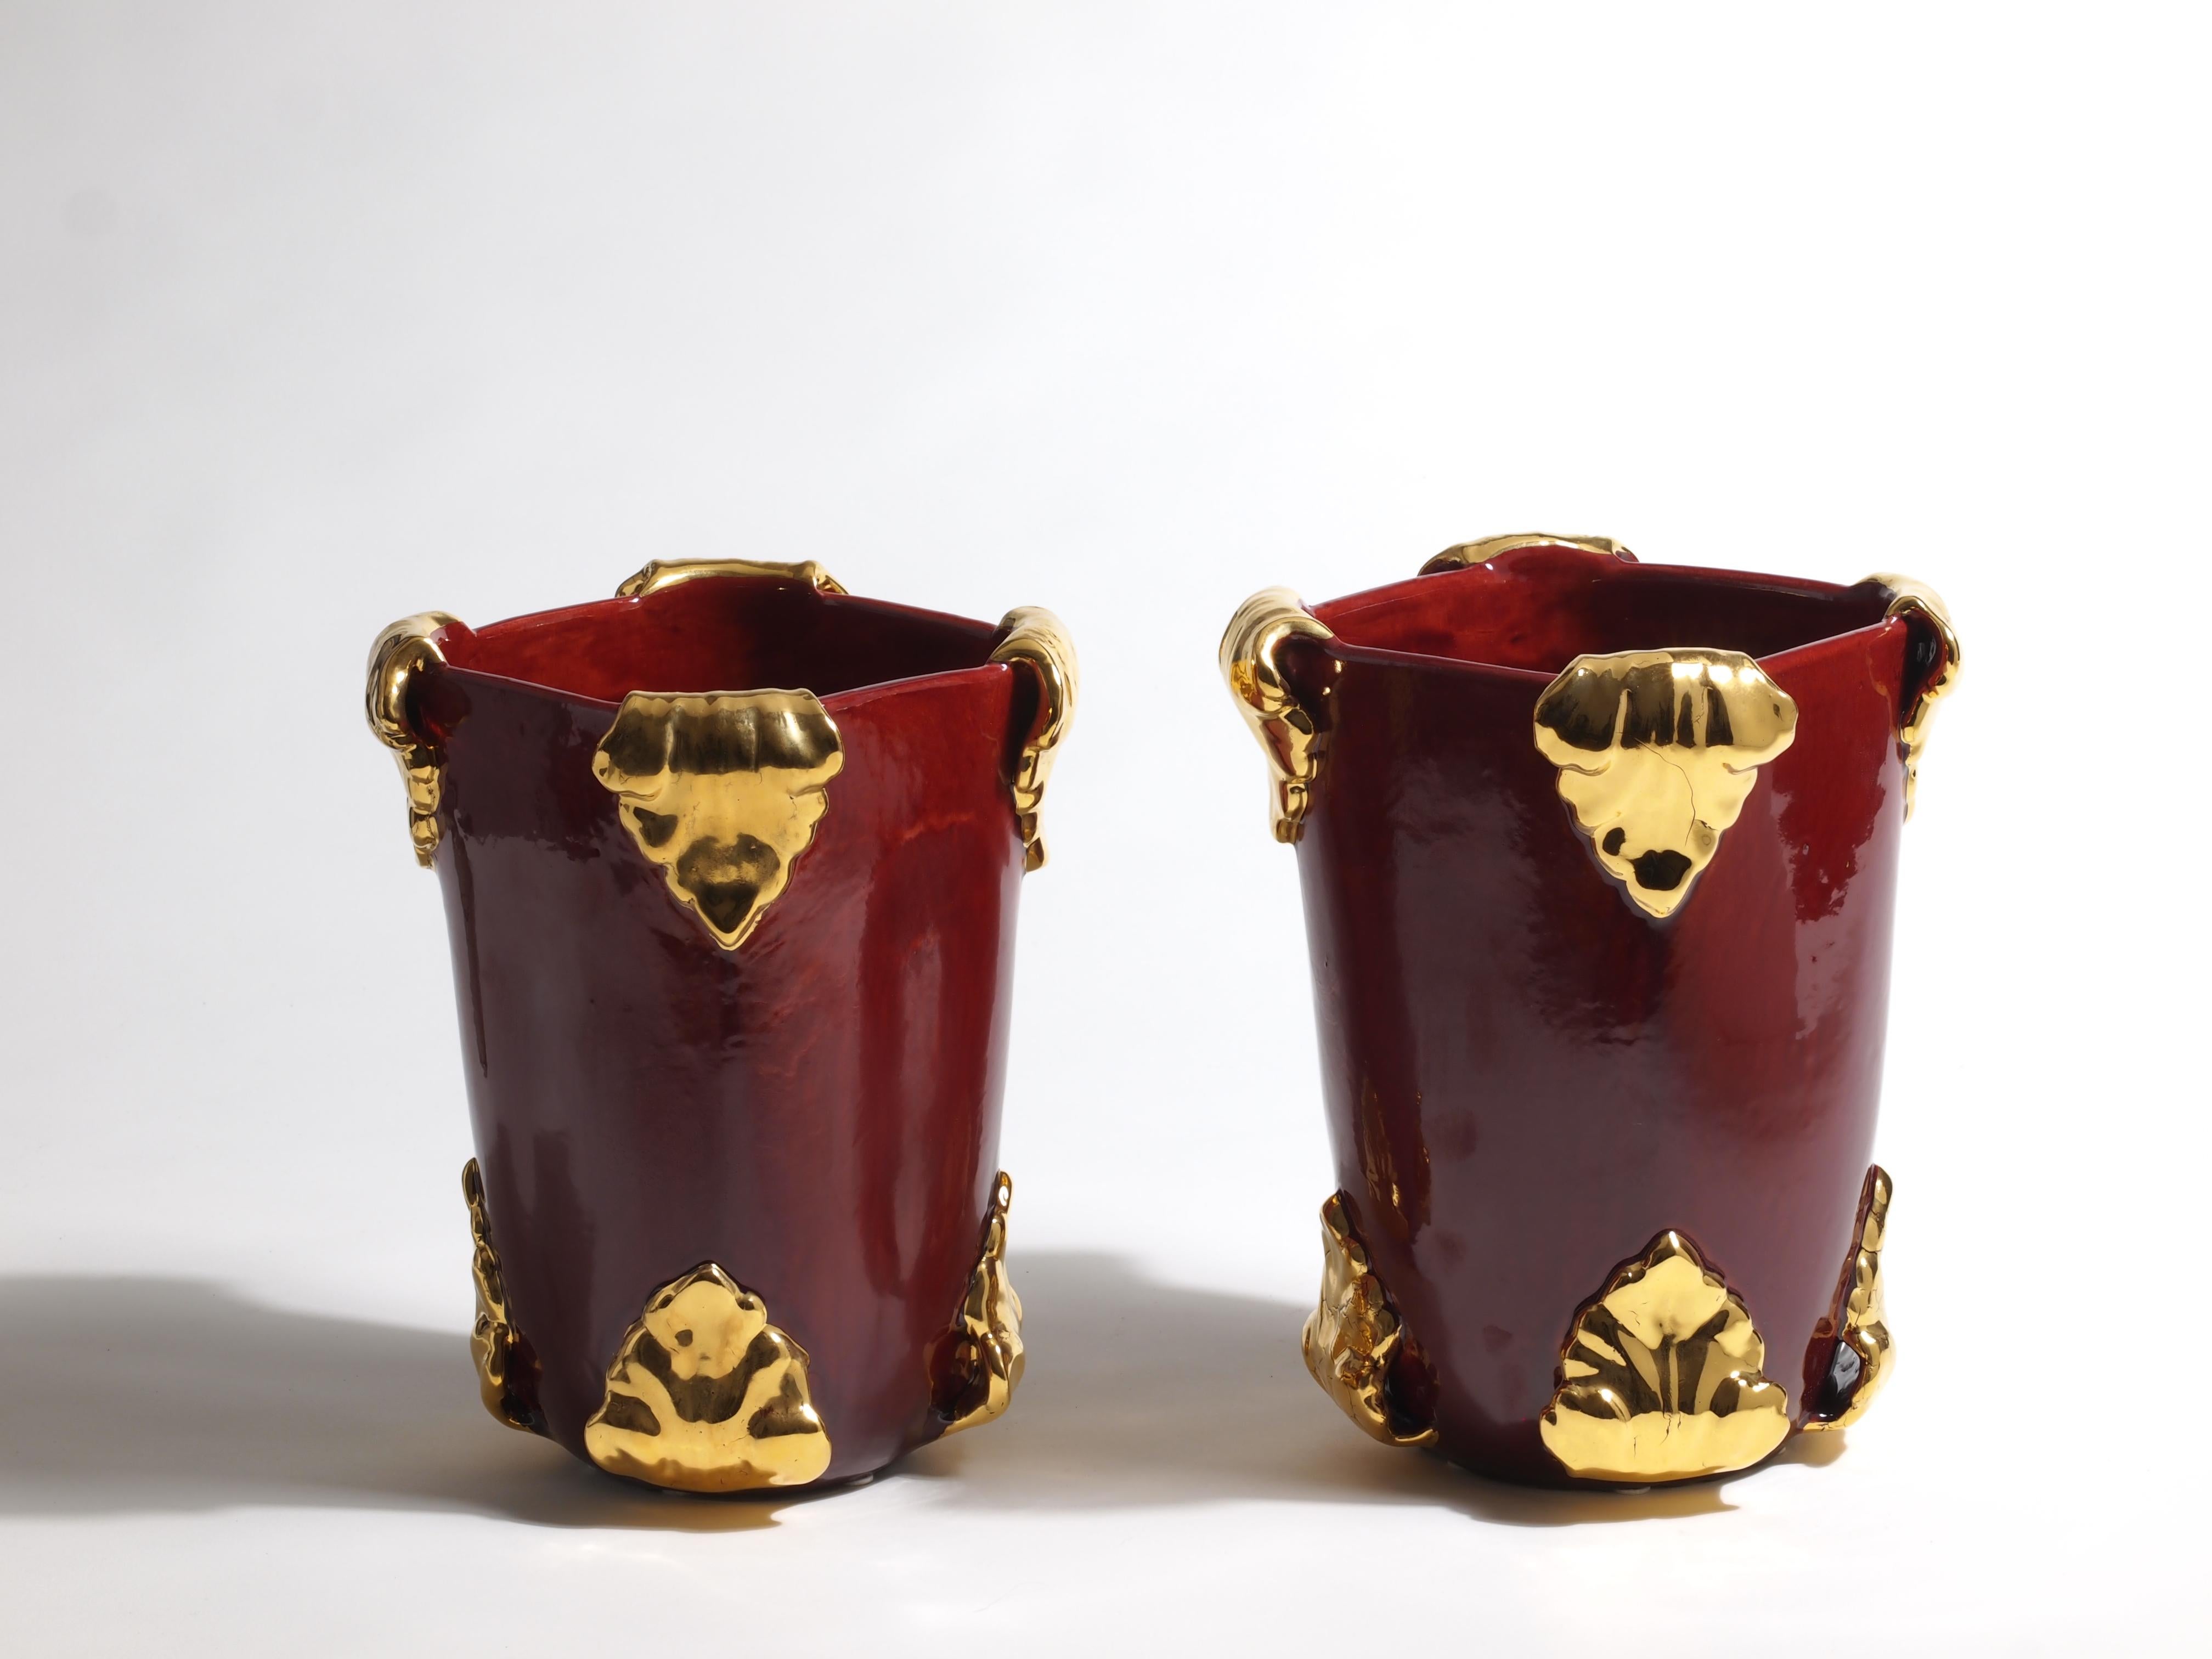 Pair of vases by Antonietta Mazzotti Emaldi, 2018, Glazed earthenware (majolica) and 24ct gold, entirely handmade, unique pieces. 

Antonietta Mazzotti (Faenza, Italy 1950) attended the Istituto d’Arte per la Ceramica in Faenza and opened her